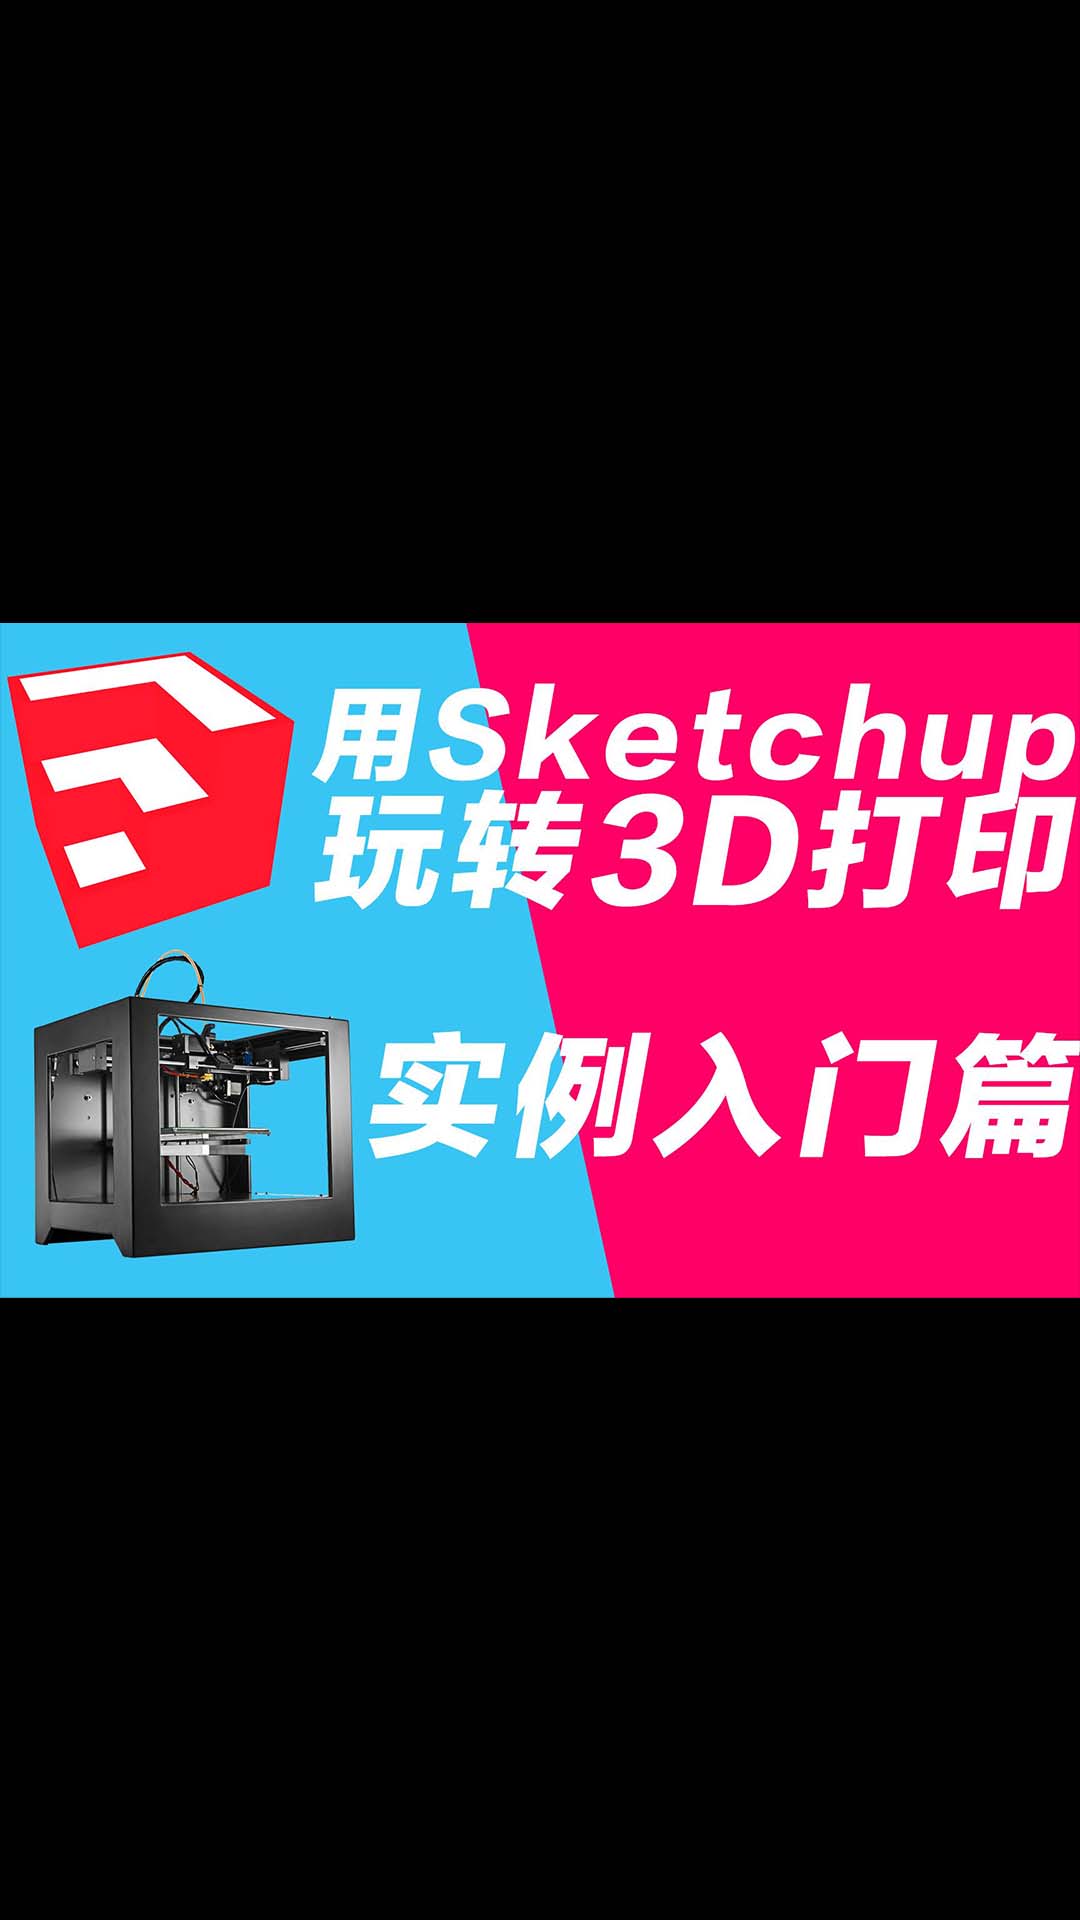 玩转3D打印机系列 用sketchup做3D打印建模 实例入门篇